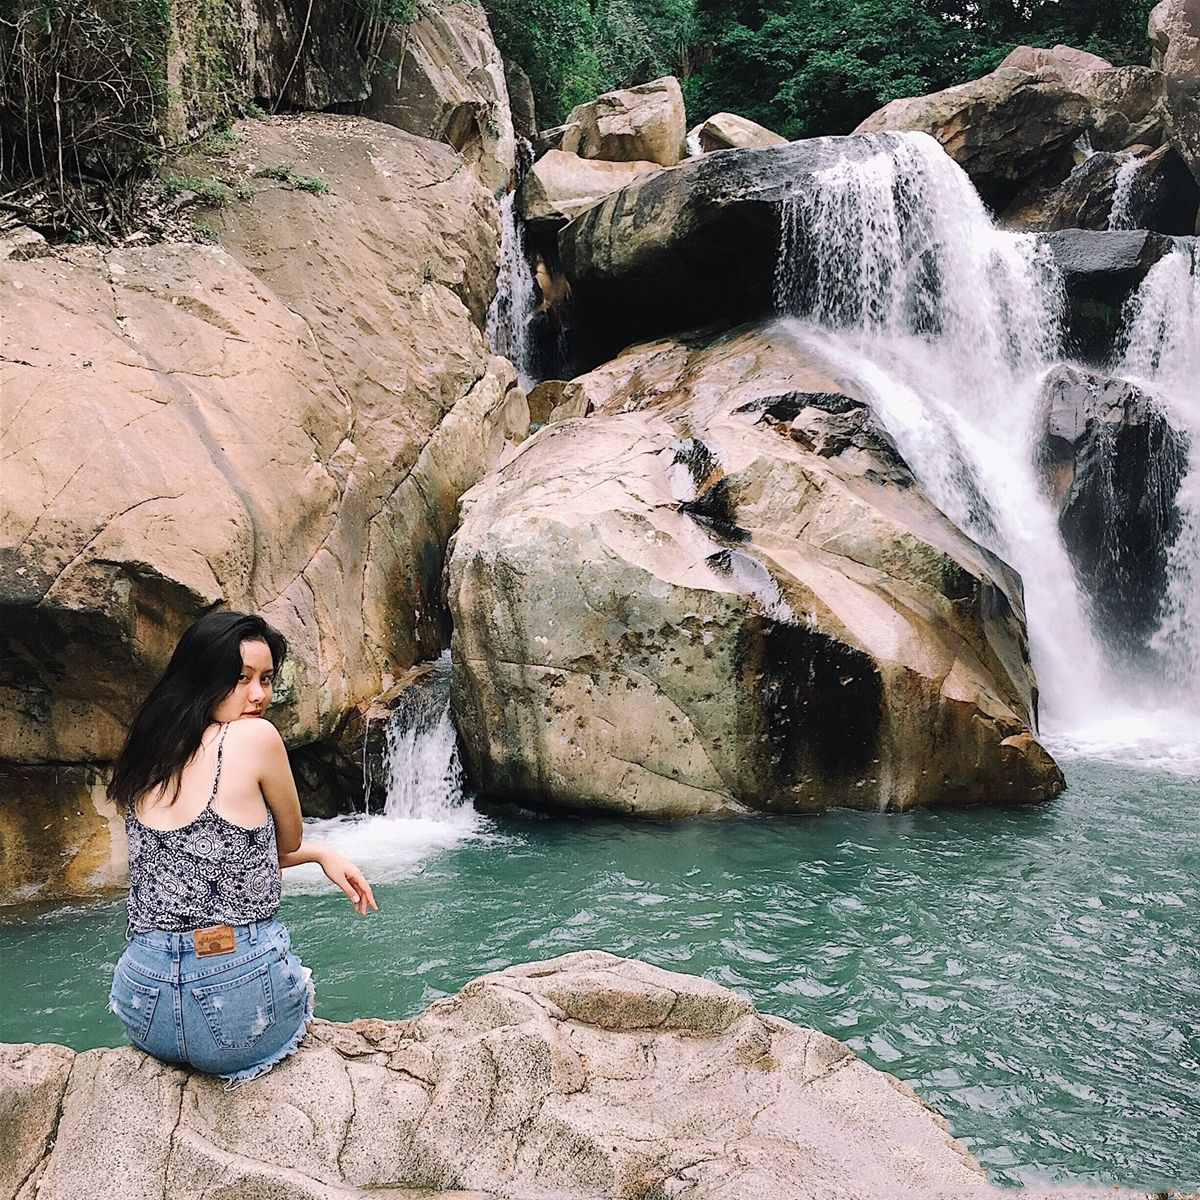 Công viên đá Ba Hồ chắc chắn là địa điểm check in cực hot tại Nha Trang mỗi khi bạn đến 